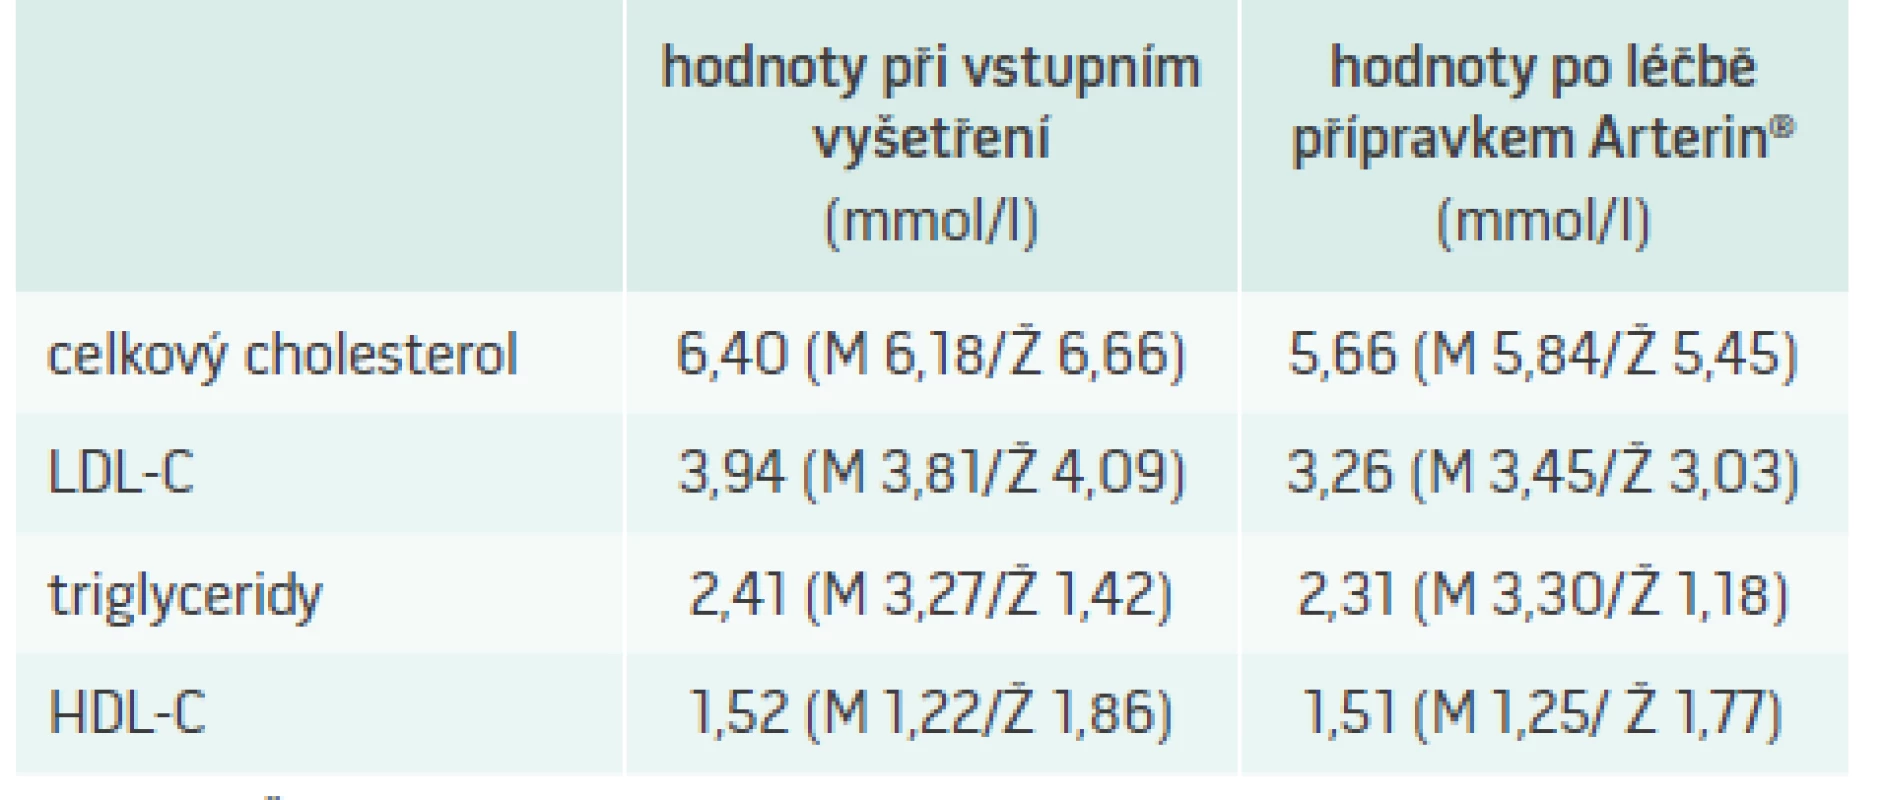 Změny lipidového spektra (mmol/l)